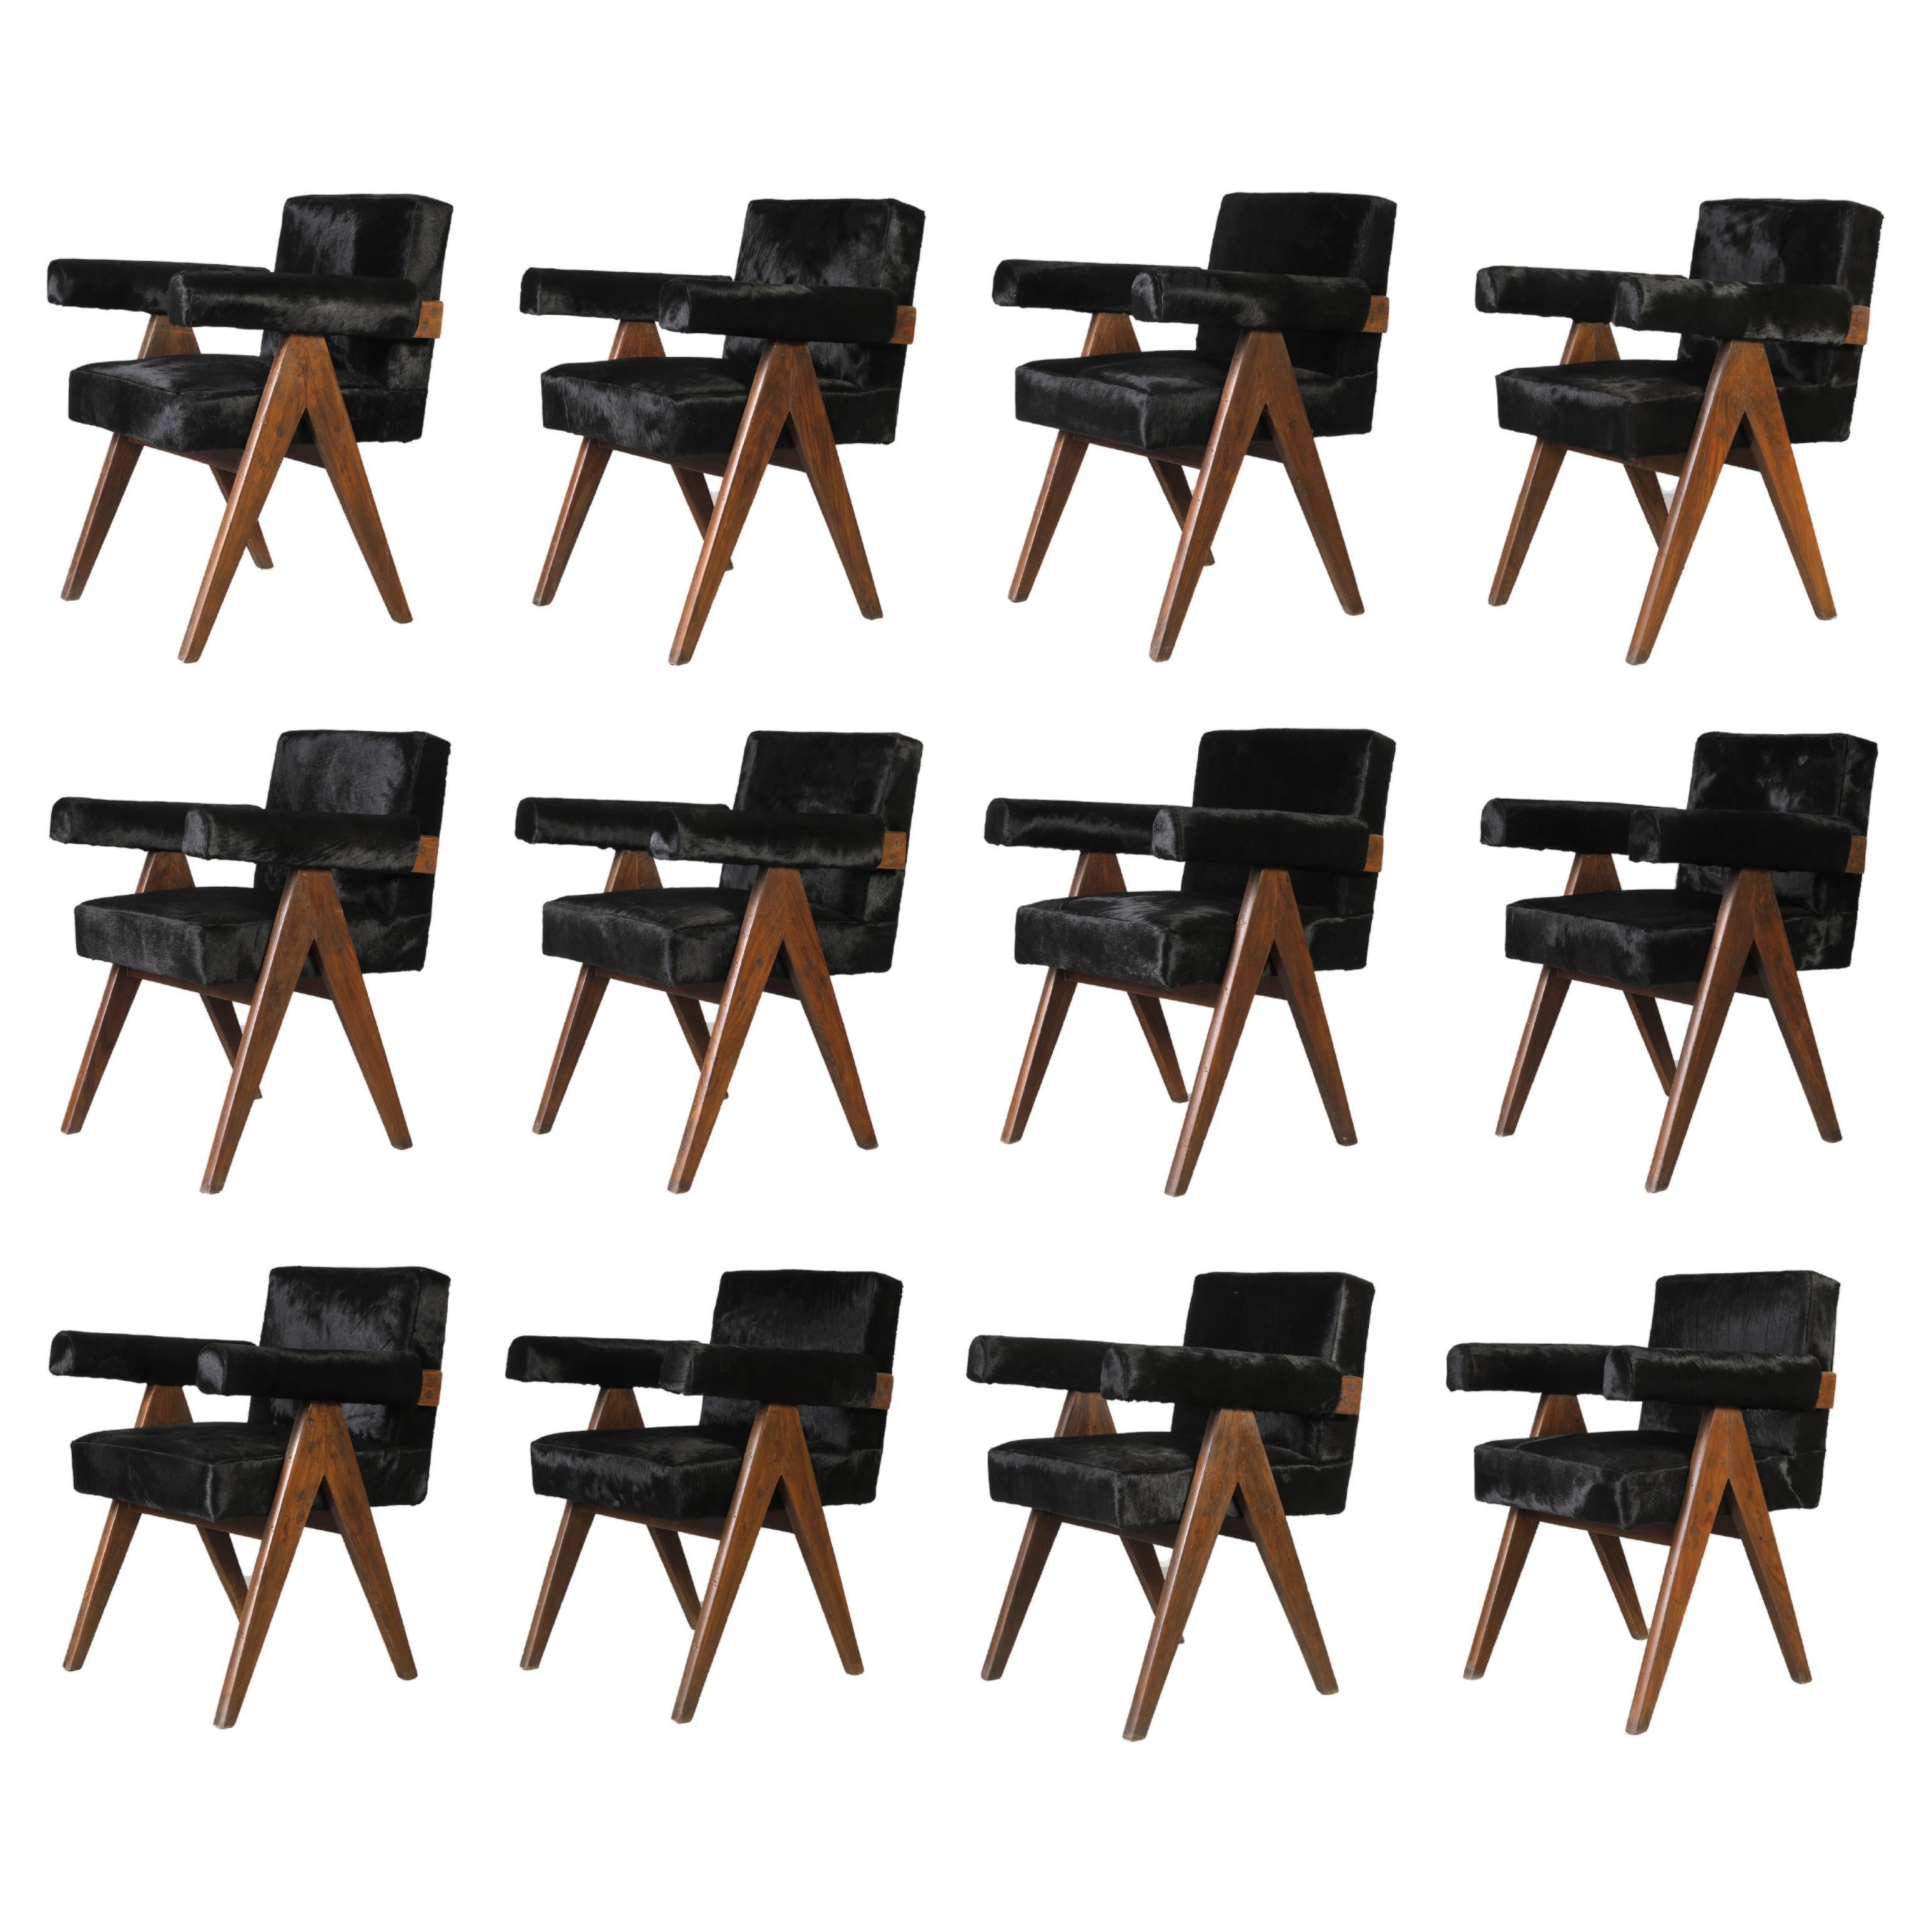 Ces chaises aux profils caractéristiques en forme de A sont de rares classiques de l'histoire. Par ses proportions sophistiquées et sa forme élégante, la chaise représente l'état d'esprit intemporel de l'architecture et du design modernistes. Il est